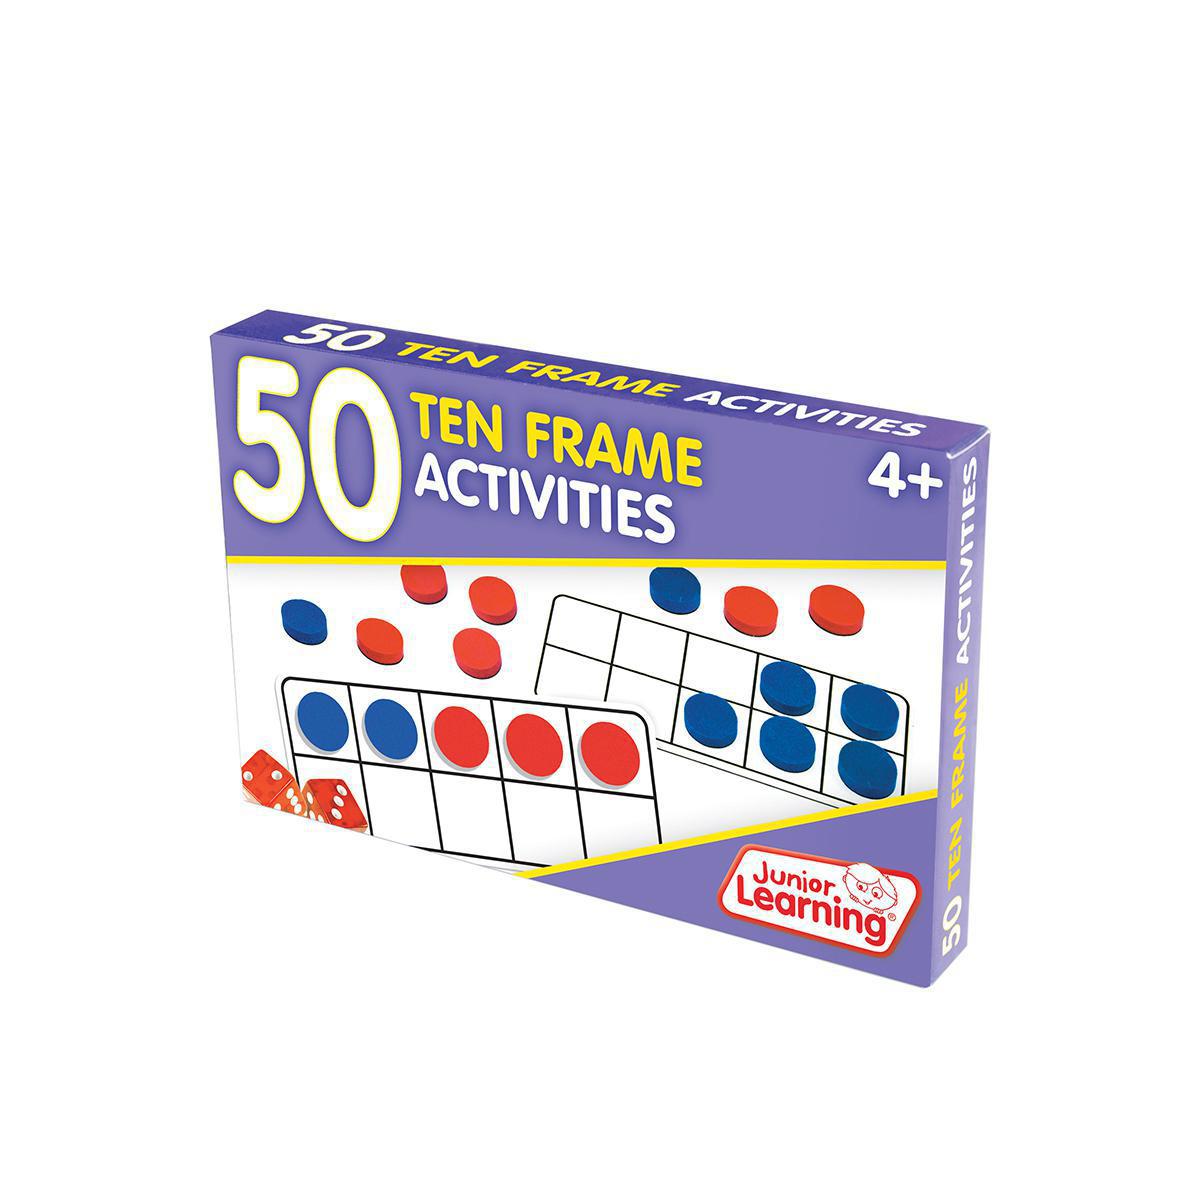  50 Ten Frame Activities 